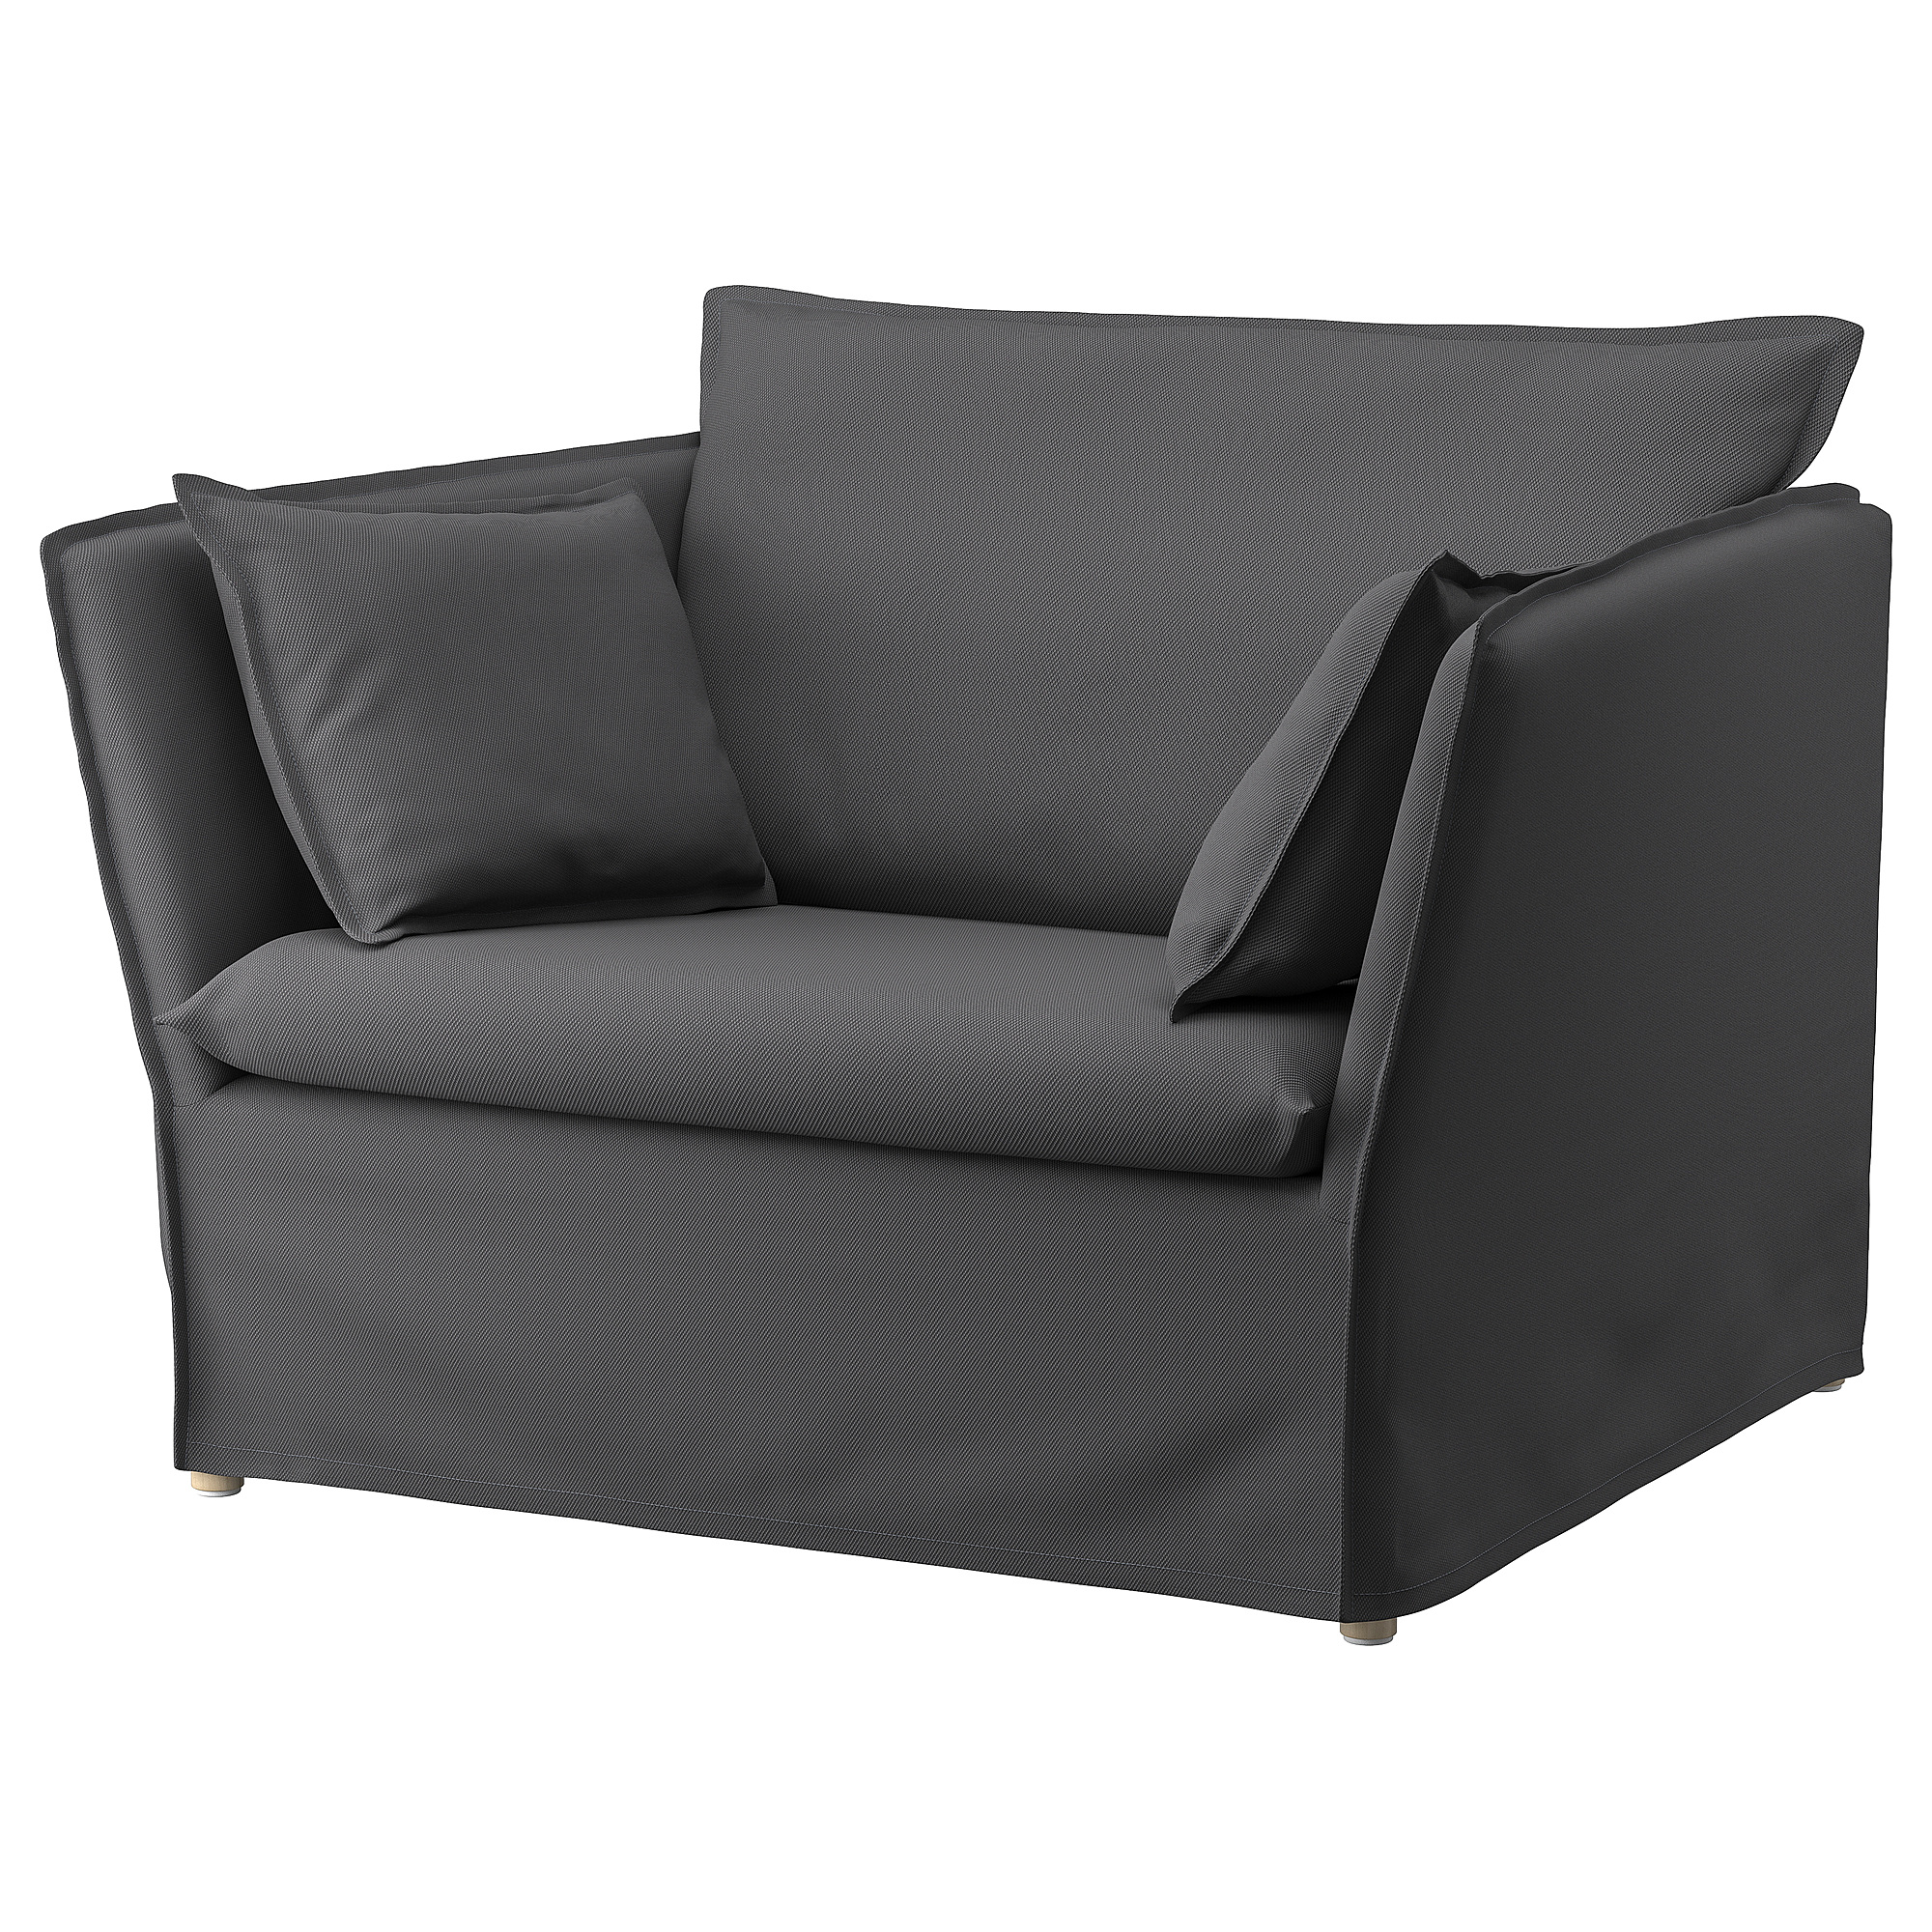 BACKSÄLEN 1,5-seat armchair